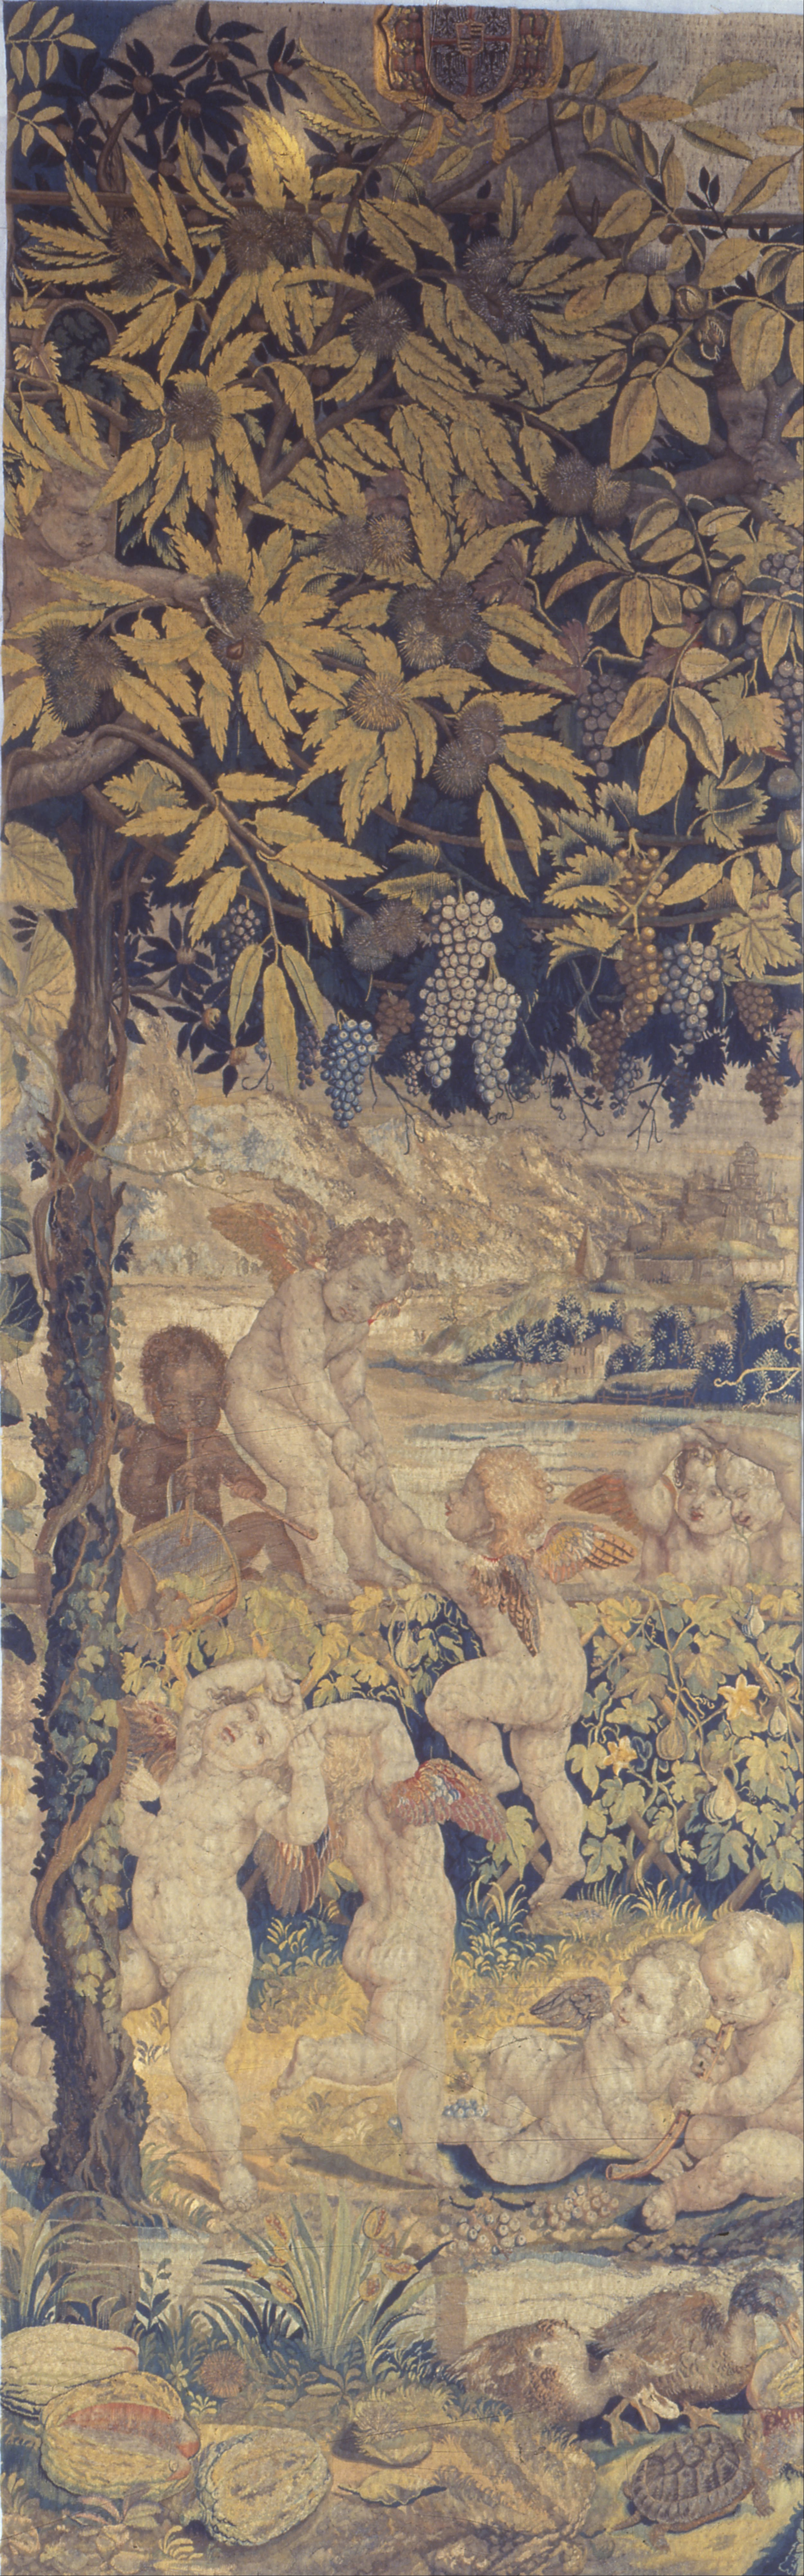 Tapiz con Querubines Jugando by Giulio Romano - 1540 - 1545 Museo Poldi Pezzoli